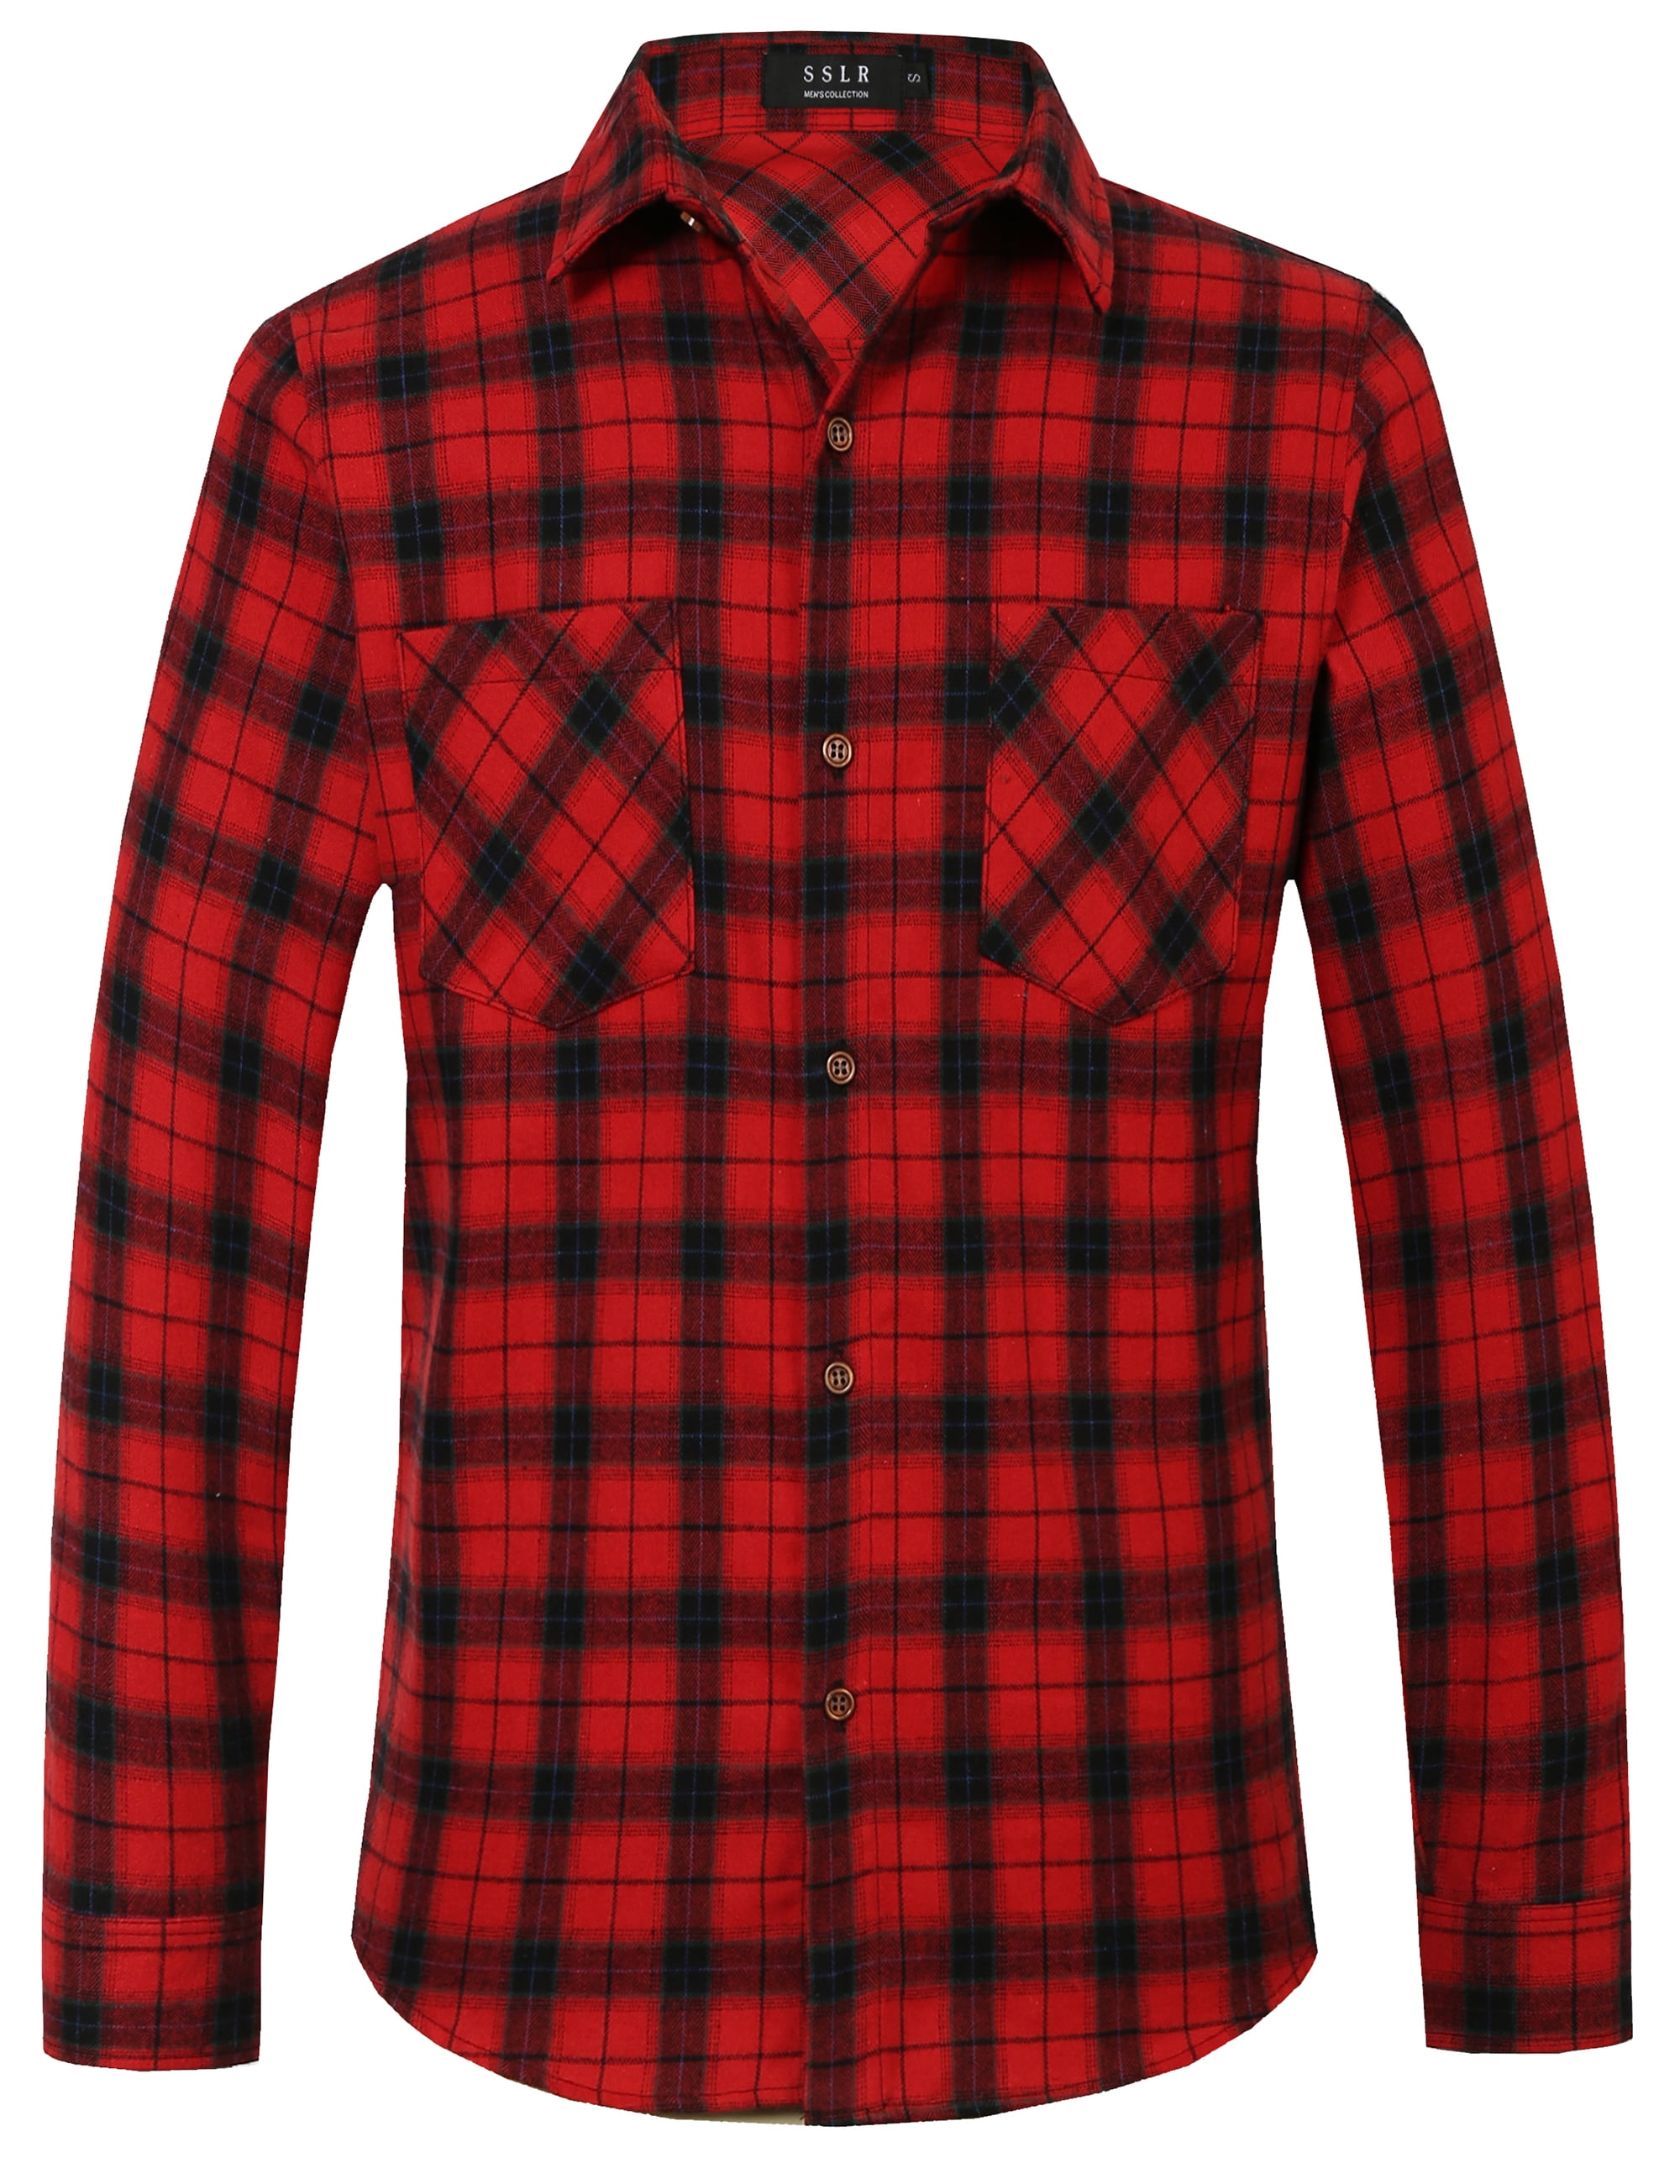 SSLR Flannel Shirts for Men, Long Sleeve Button Down Shirt Lightweight ...